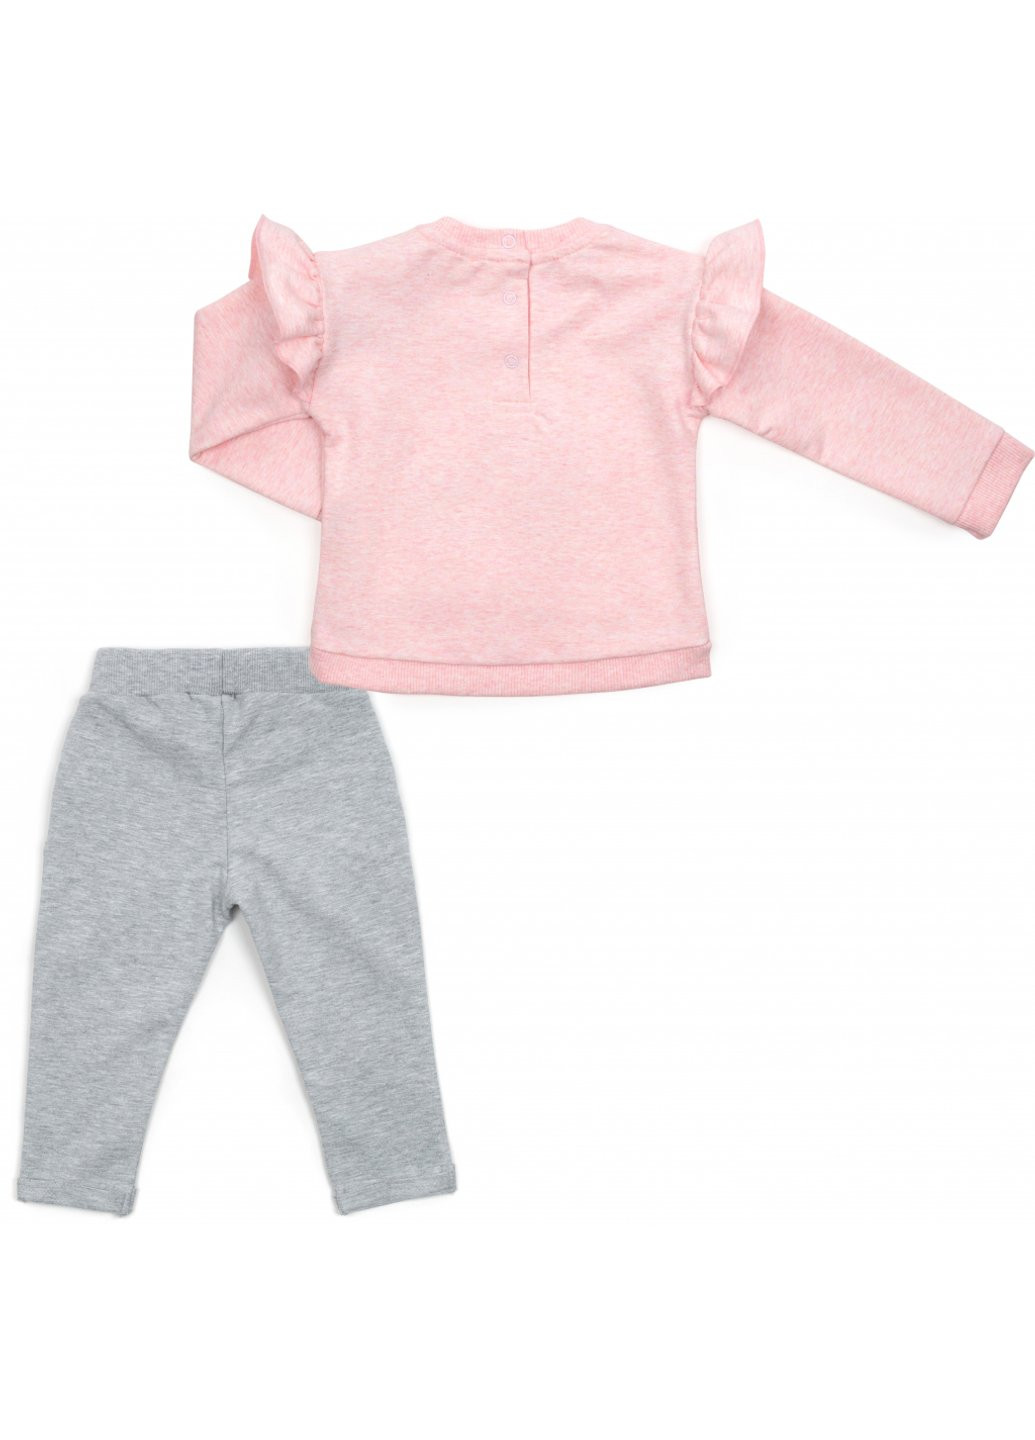 Комбинированный демисезонный набор детской одежды с единорогом (16060-92g-peach) Breeze